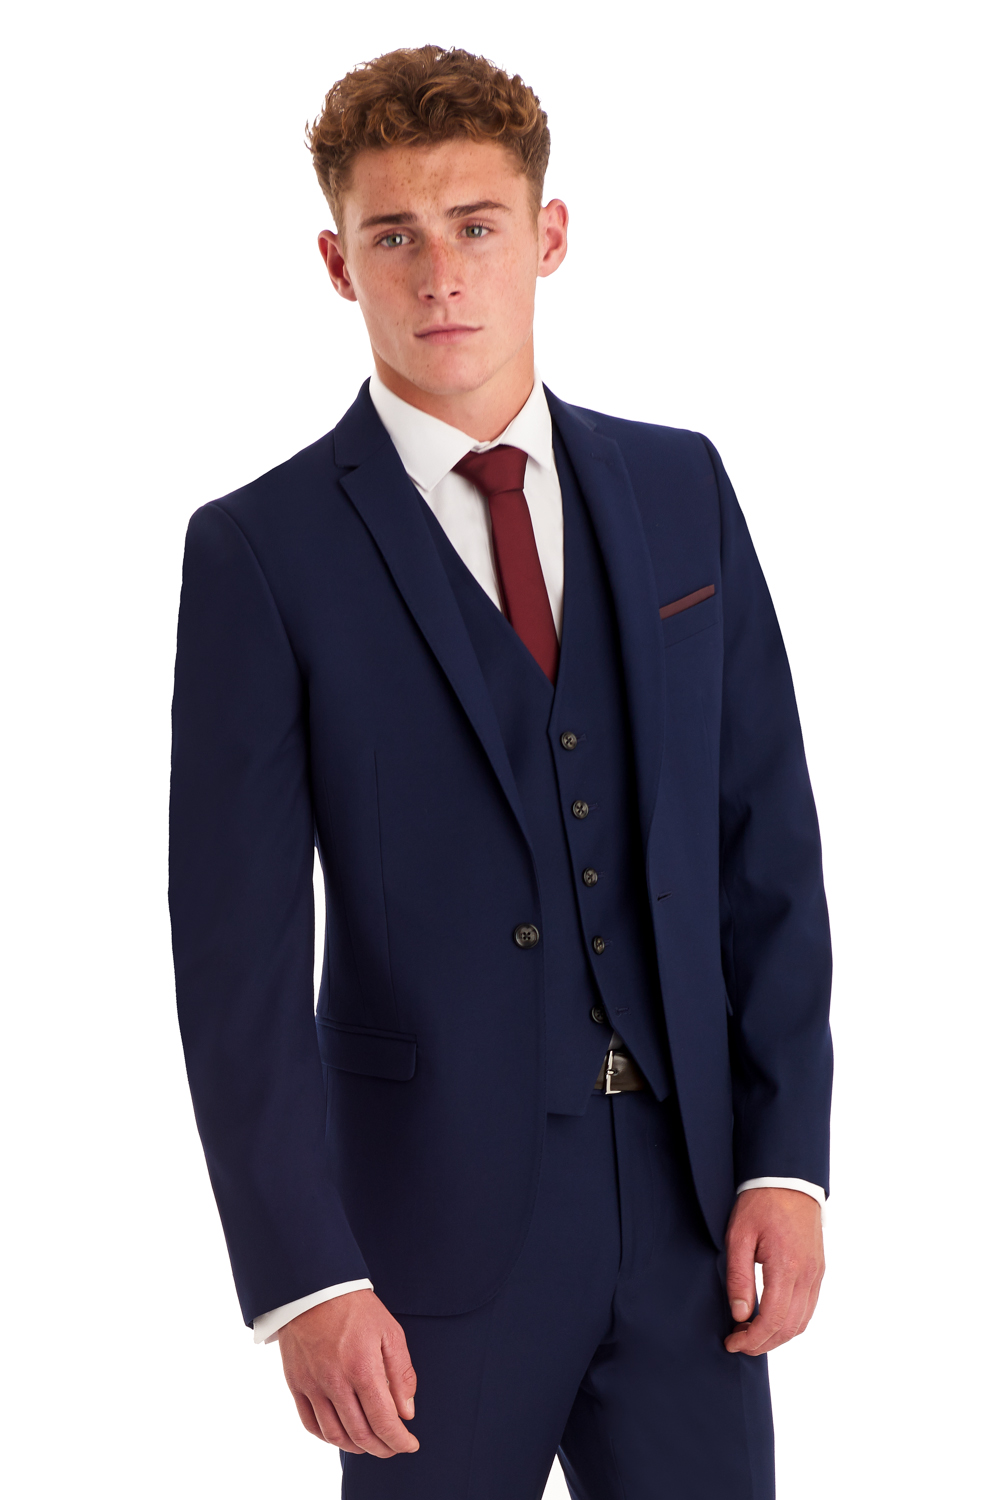 Men Suit 3 Pieces Slim Fit Promotion-Shop for Promotional Men Suit